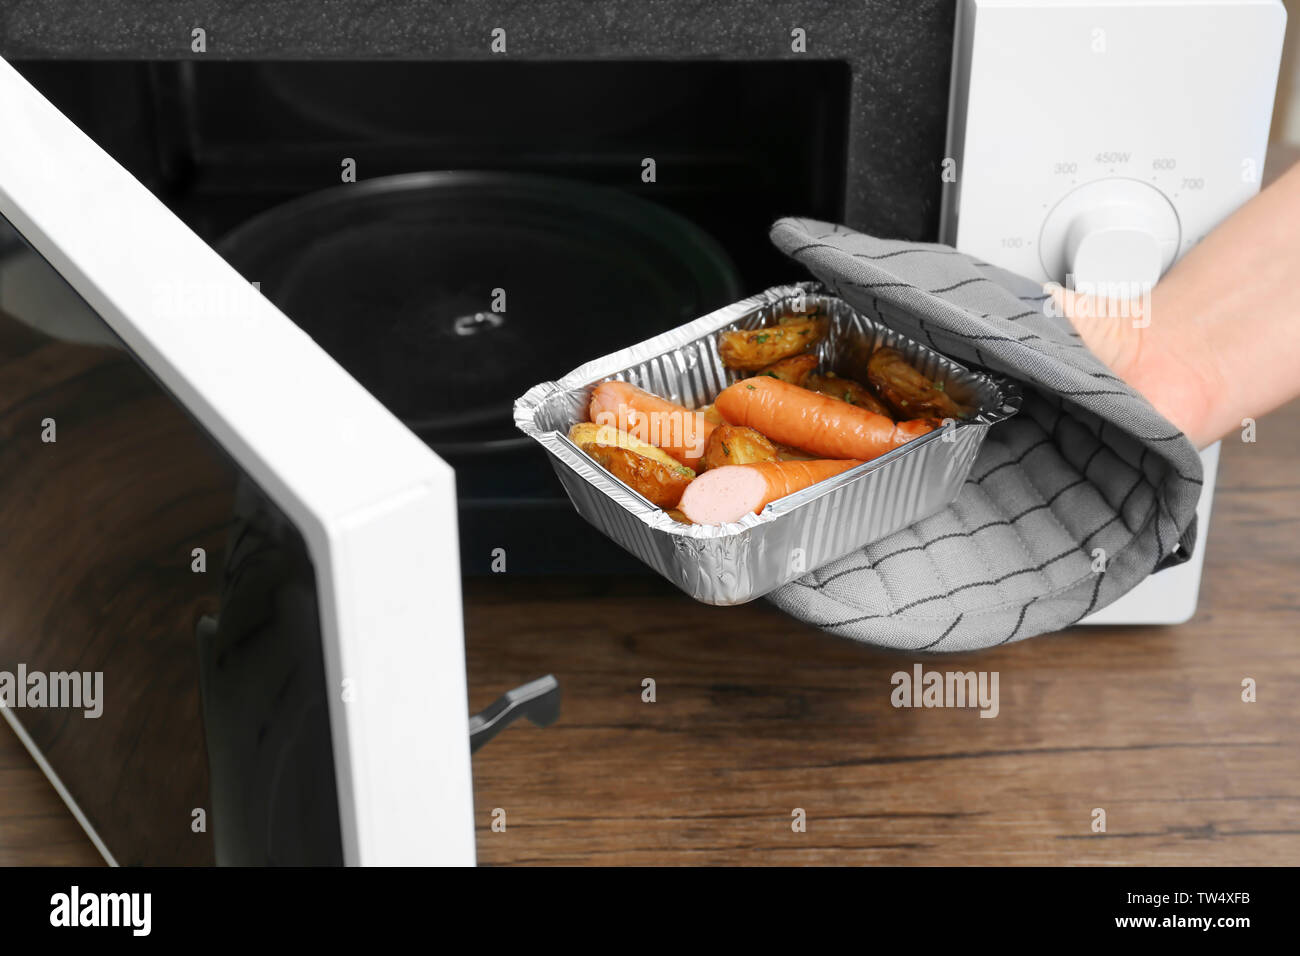 Frau unter Folie Backform mit Kartoffeln und Würstchen aus der Mikrowelle  in der Küche Stockfotografie - Alamy